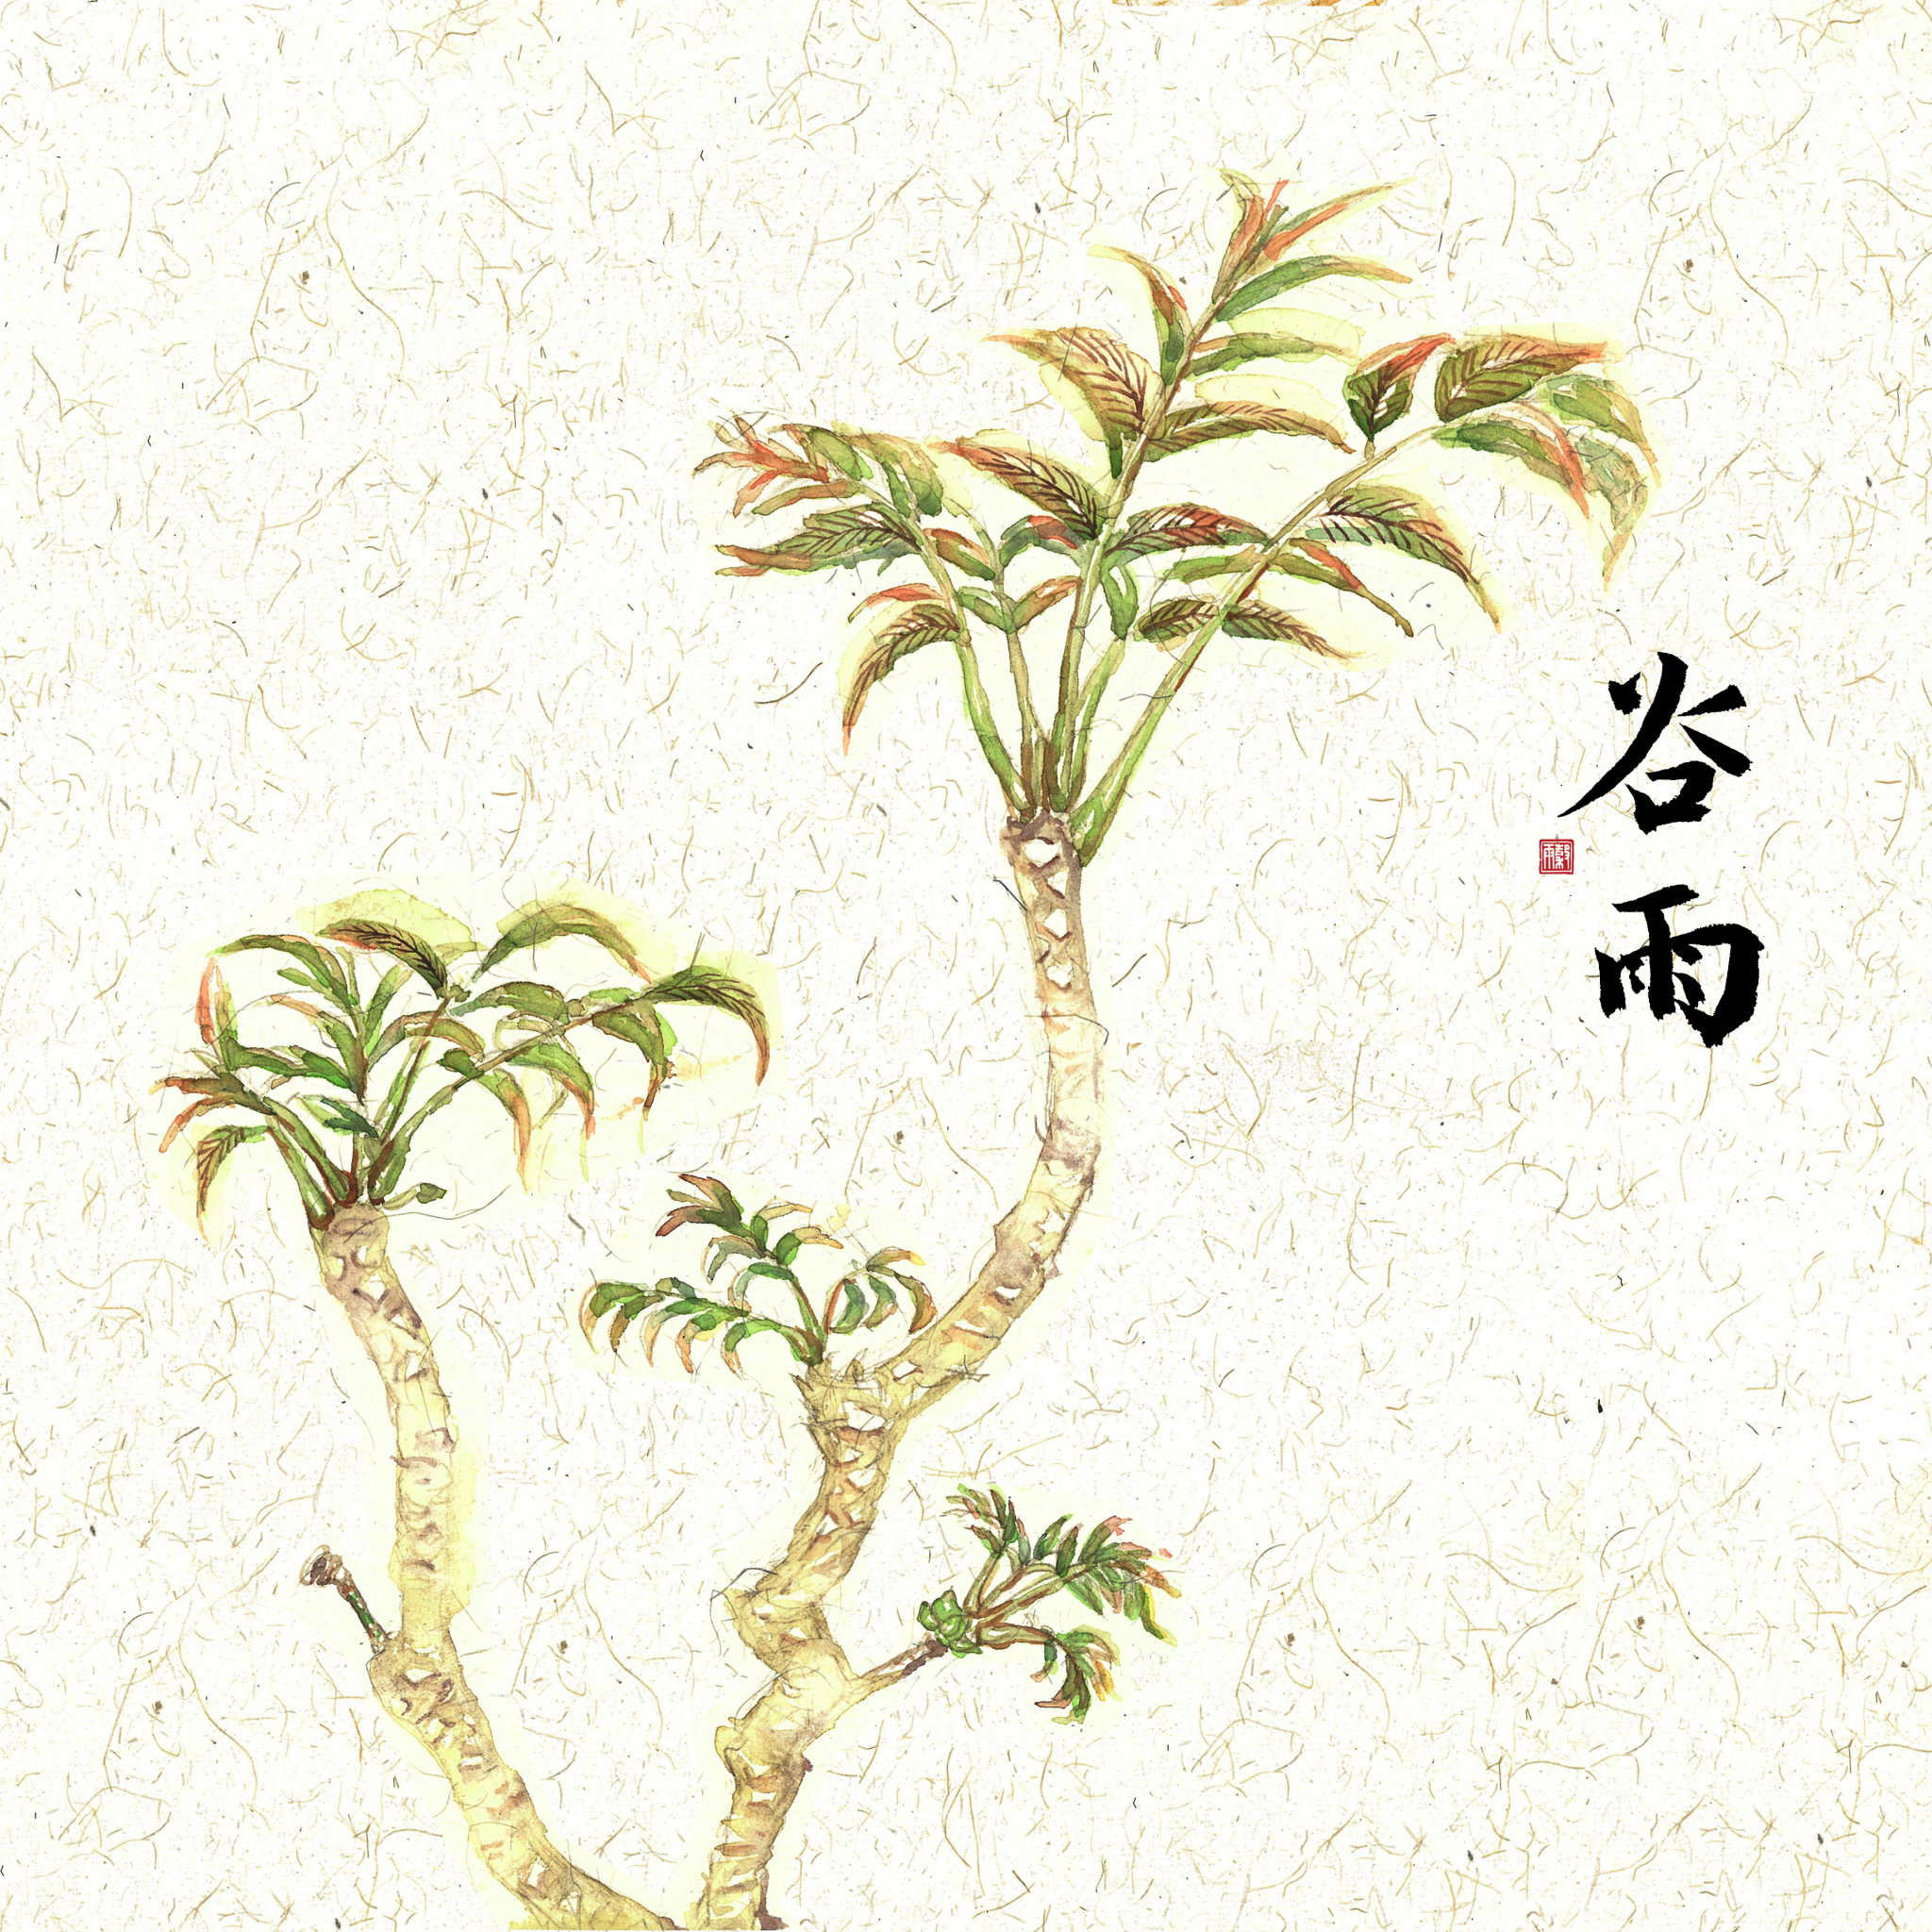 插画二十四节气果蔬系列之谷雨香椿 水彩手绘中国风